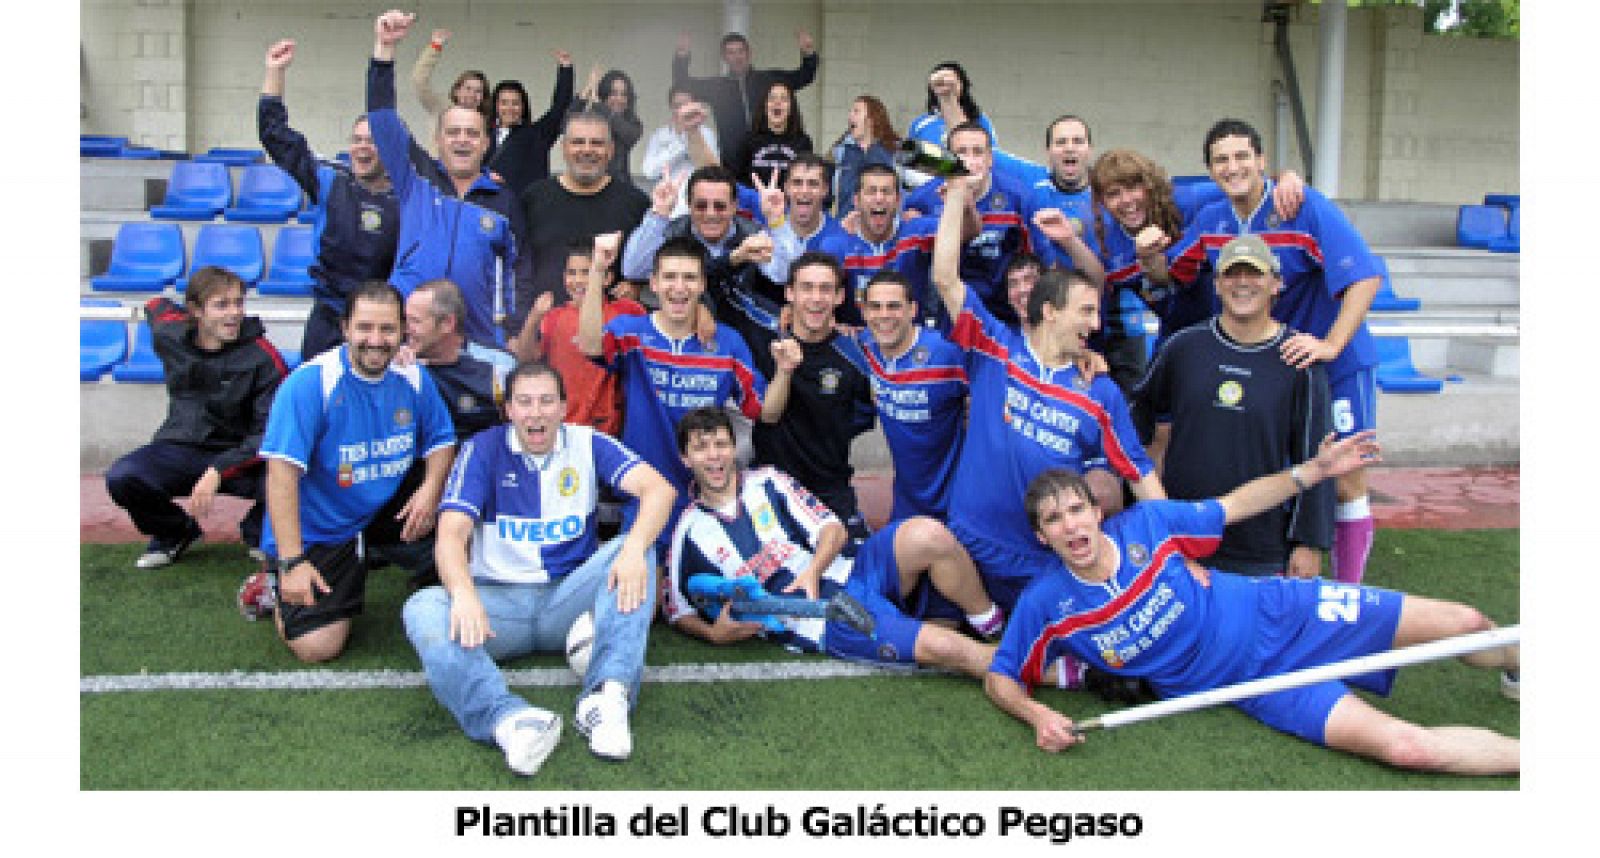 Plantilla del Galáctico Pegaso. temporada 2007-2008.